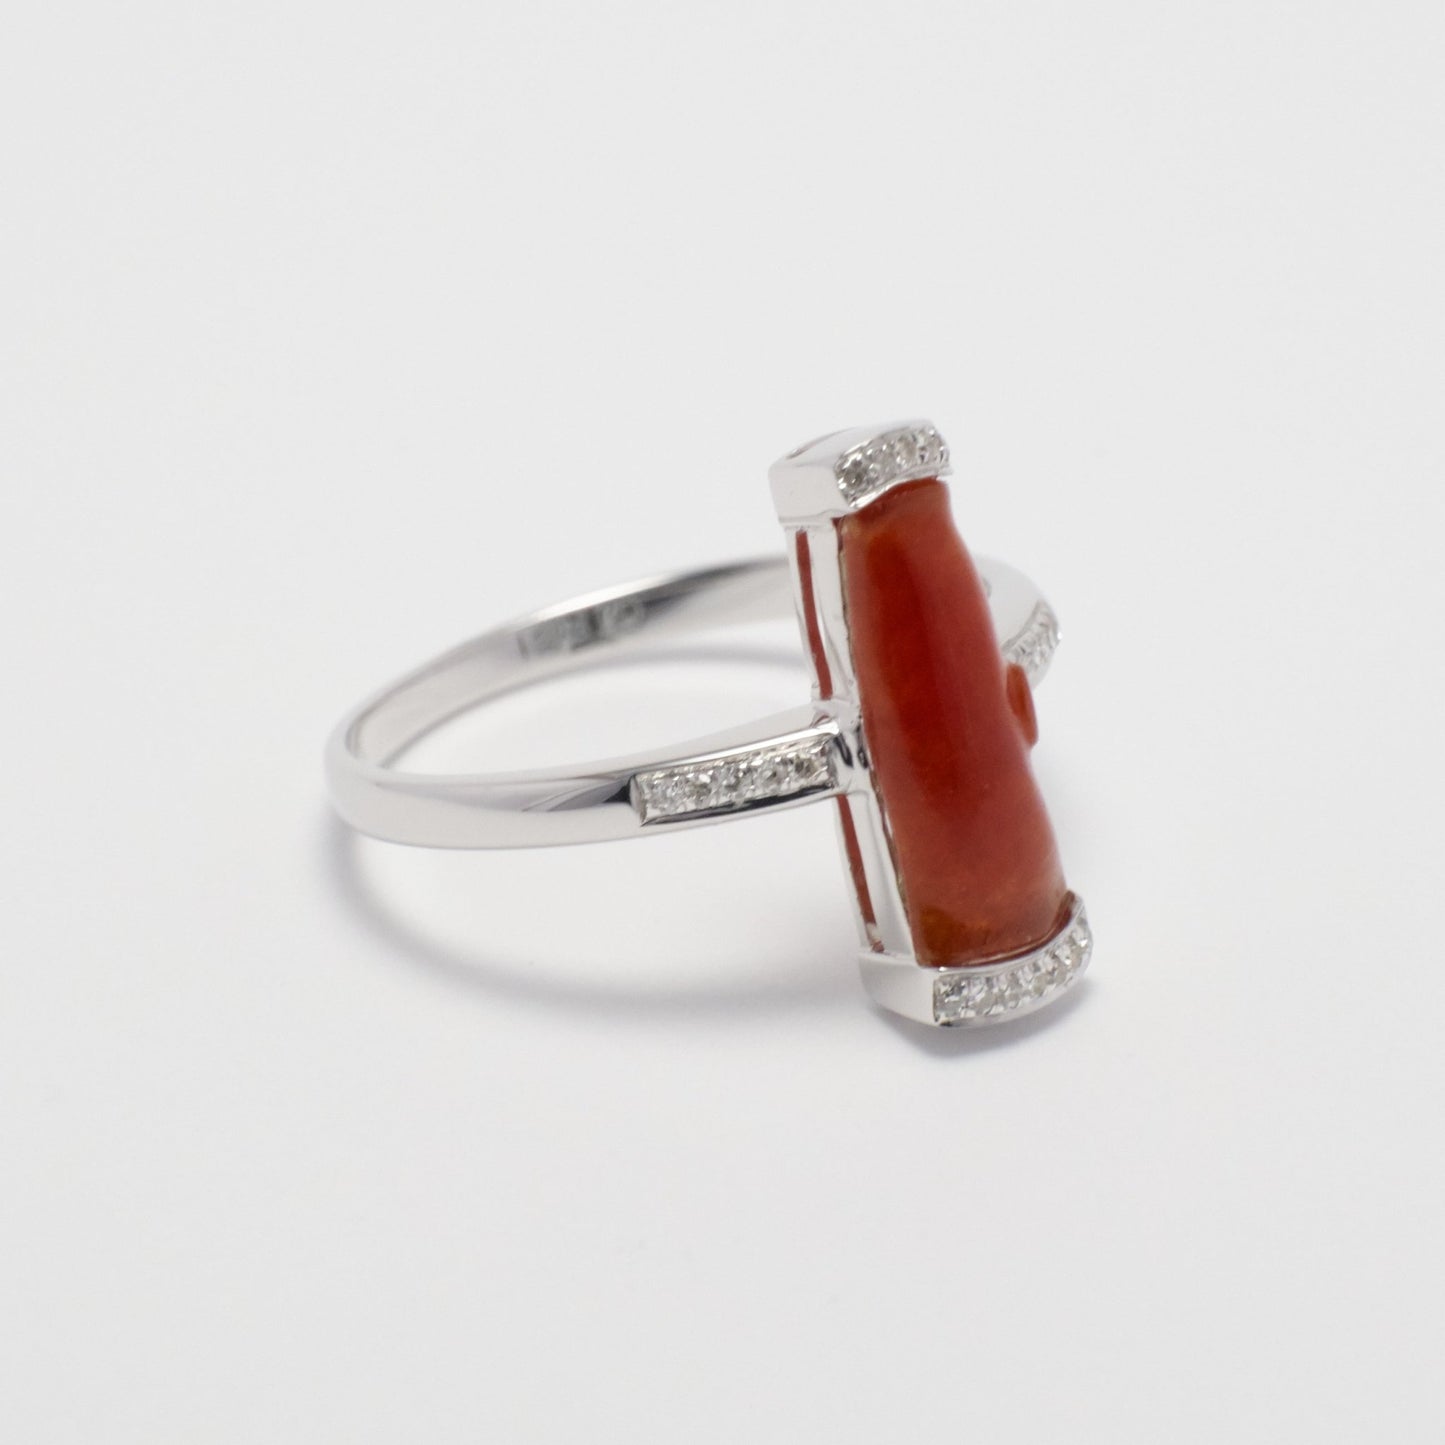 Ring - 18K白金緬甸紅翡竹形雕刻天然翡翠配鑽石戒指 - 雅玉珠寶